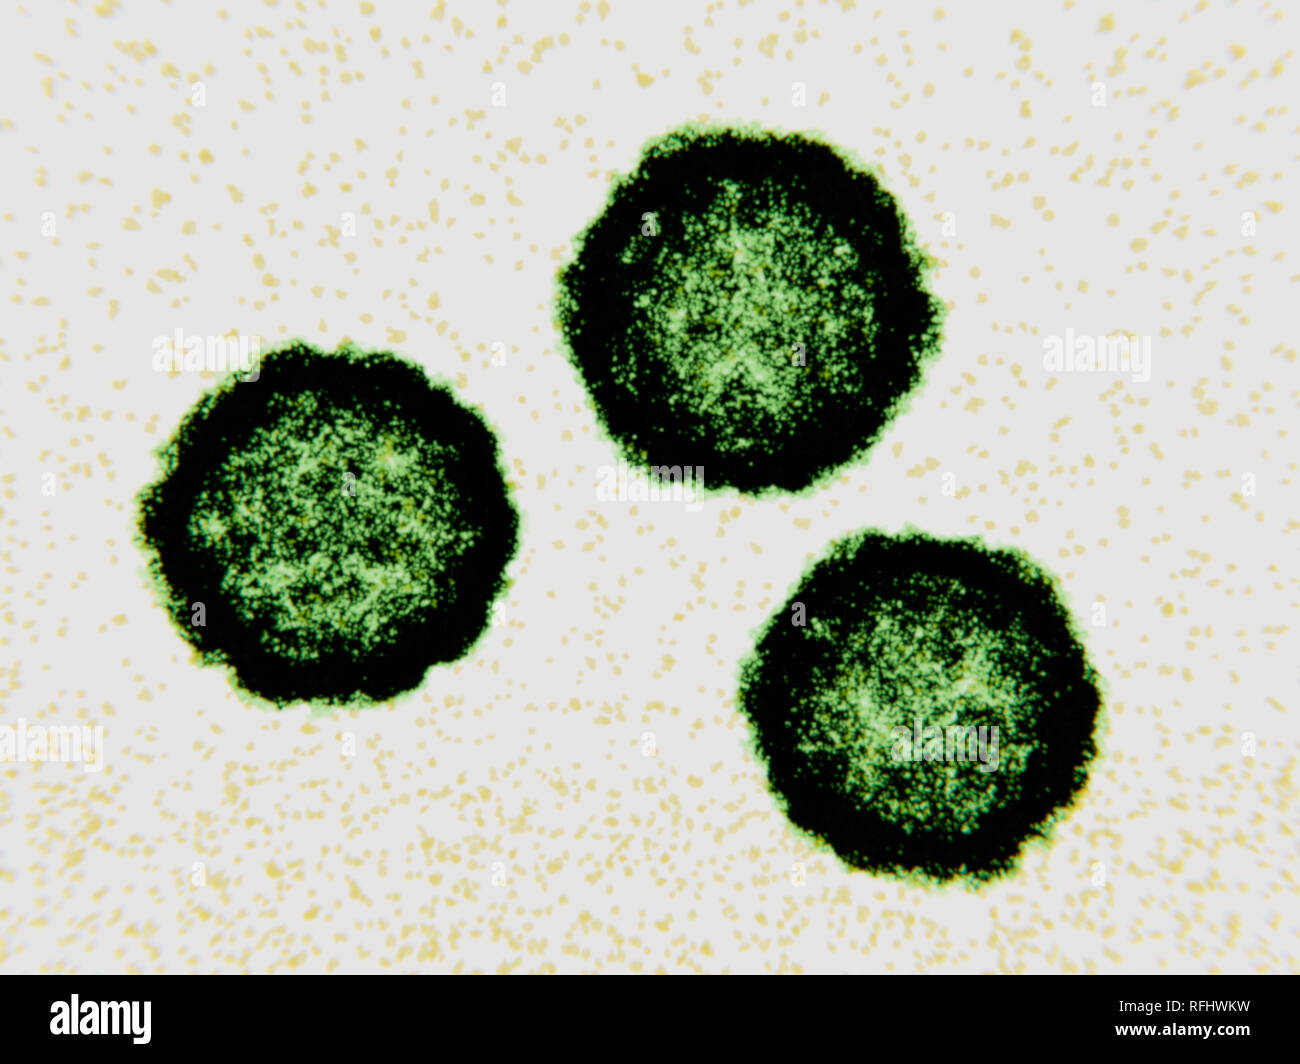 Coxsackievirus Viruspartikel, Illustration. Coxsackievirus Viruspartikel (Virionen) bestehen aus einer äusseren Proteinmantel (Kapsid) begrenzenden RNA (Ribonukleinsäure), das genetische Material des Virus. Coxsackievirus ist eine Art von Enterovirus. Es gehört zu den häufigsten und wichtigsten menschlichen Krankheitserregern, wodurch Erkältungen, virale Meningitis und myokarditis. Die Infektion breitet sich von Person zu Person, in der Regel auf ungewaschene Hände und Flächen mit Fäkalien, wo das Virus für mehrere Tage leben können verunreinigt. Coxsackie-viren sind unterteilt in Typ A und Typ B, Typ B, die Schwerste. Stockfoto